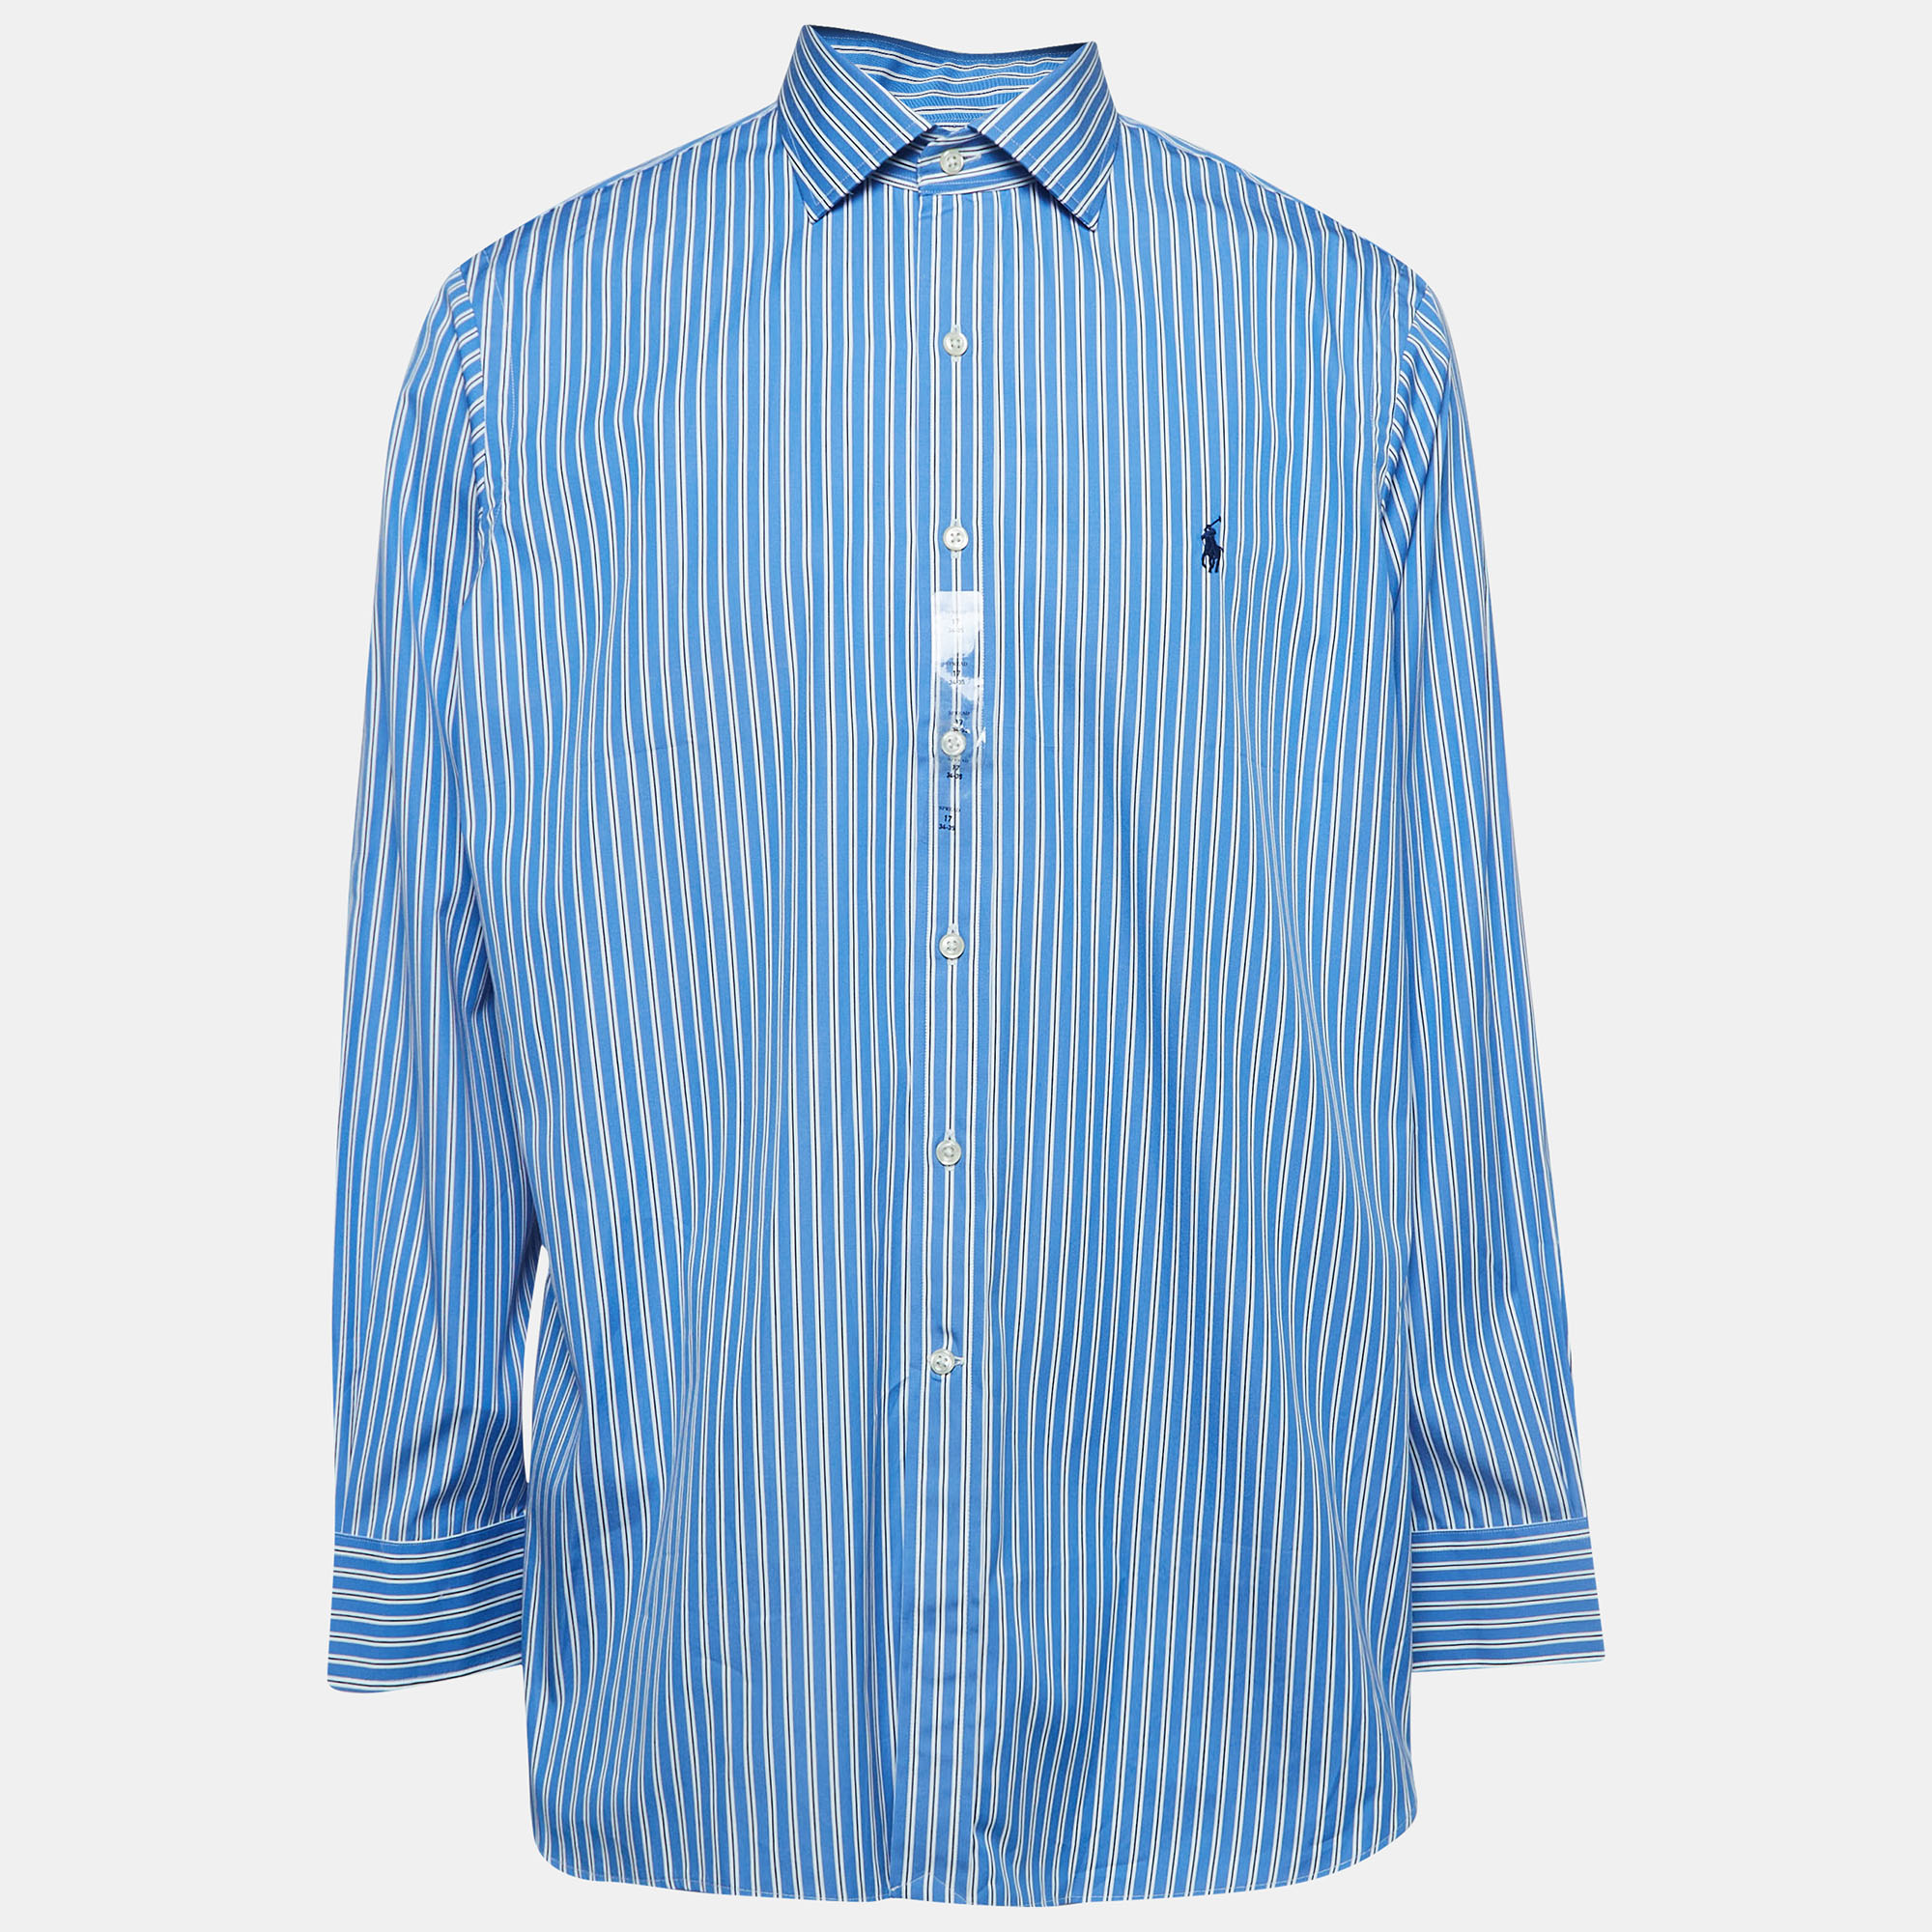 Polo ralph lauren pinstripe cotton buttoned shirt xxl